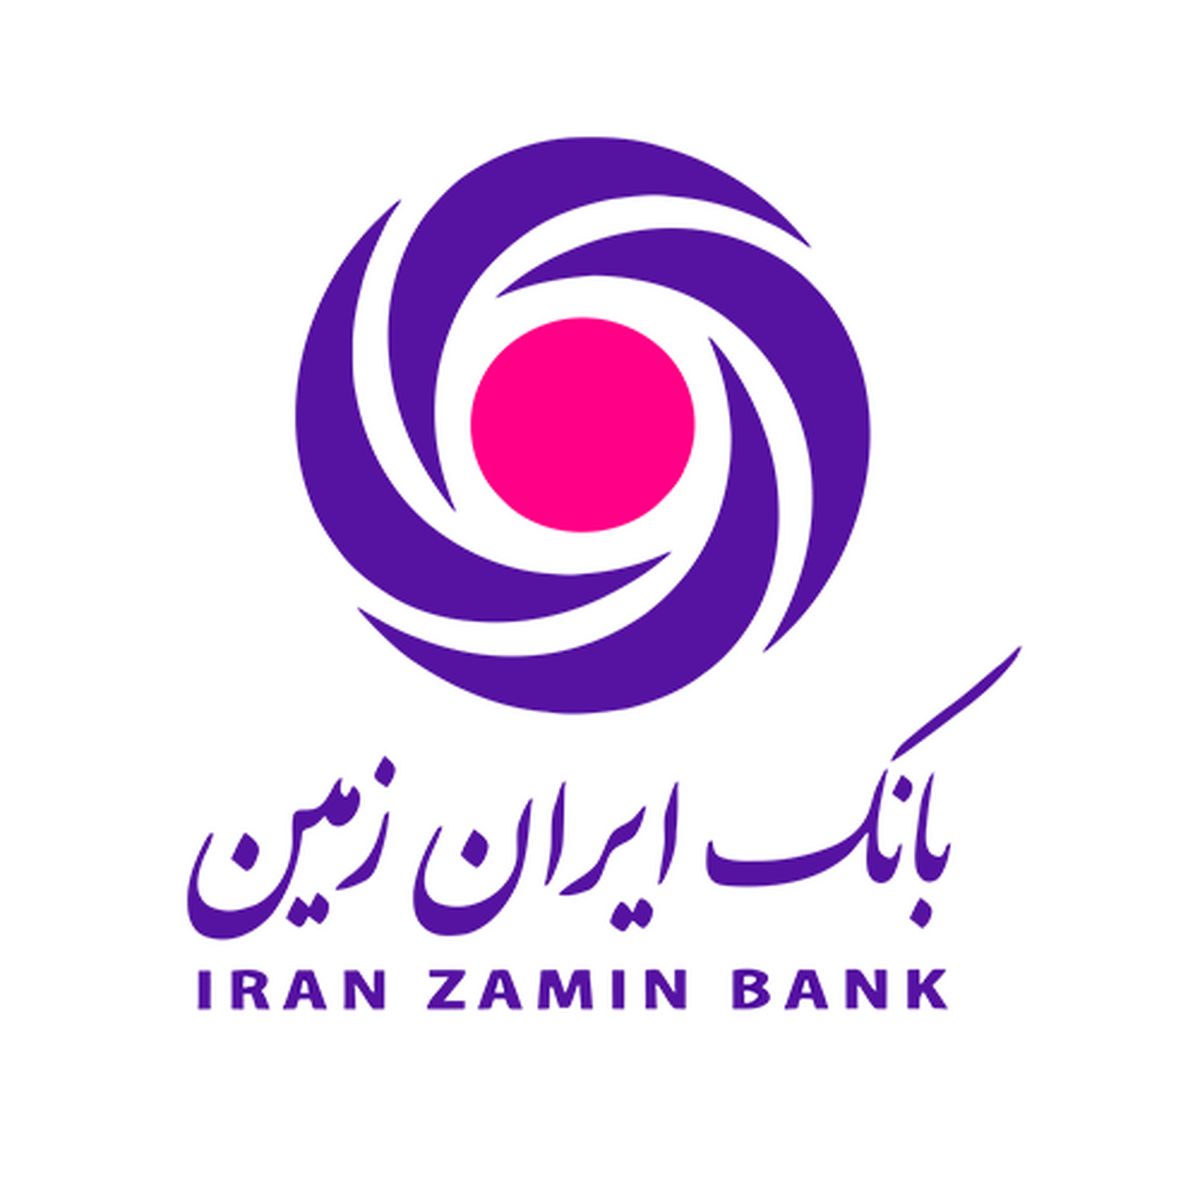 شماره آذرماه نشریه ارتباط ایران زمین منتشر شد تجربه موفق از نخستین هم افزایی بین بانکی به همت بانک ایران زمین